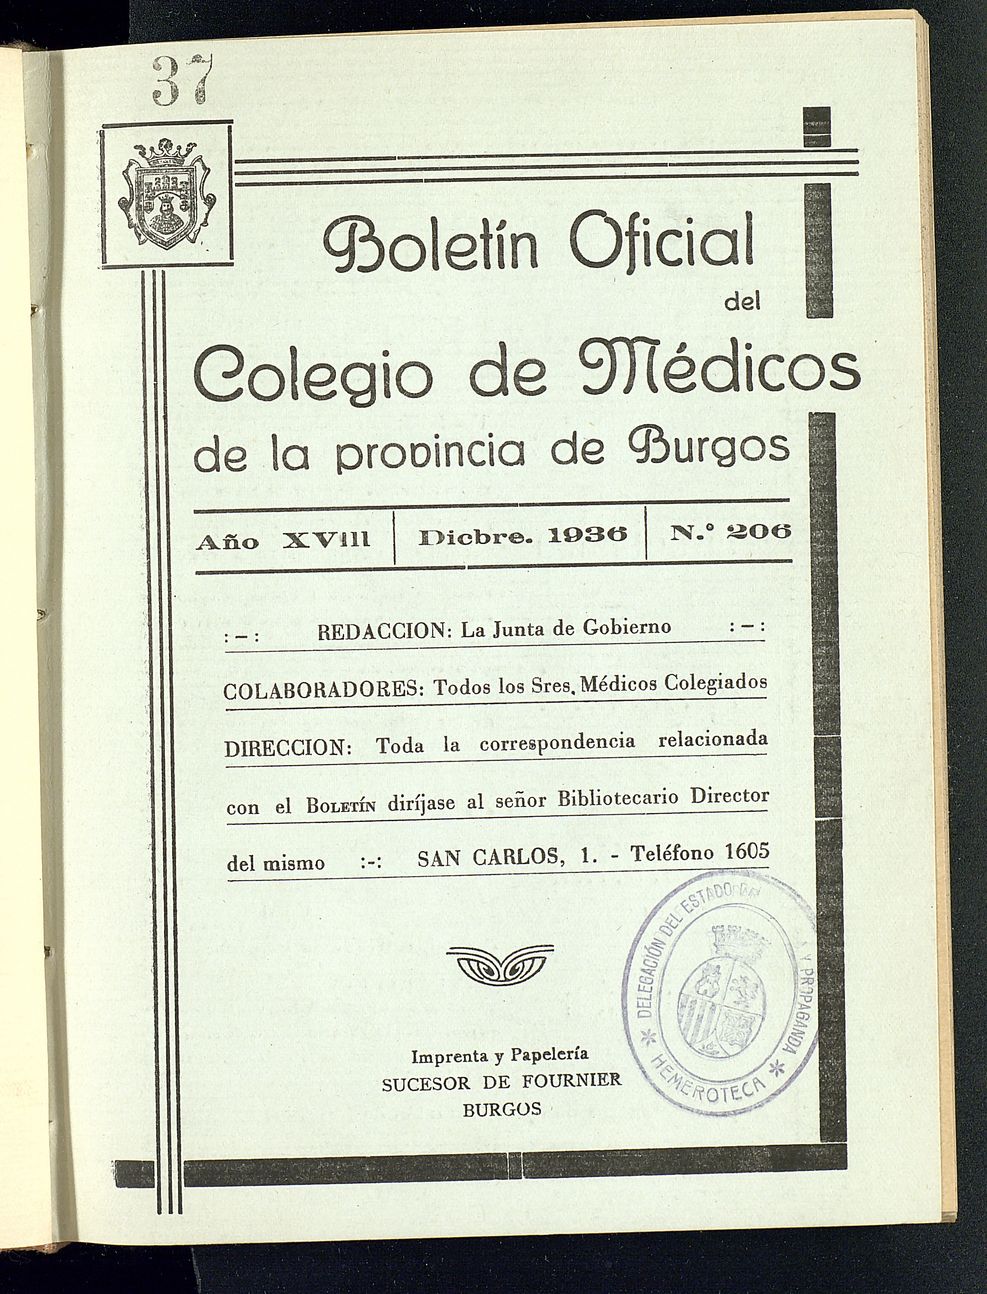 Boletín Oficial del Colegio de Médicos de la Provincia de Burgos. Diciembre de 1936, nº 206